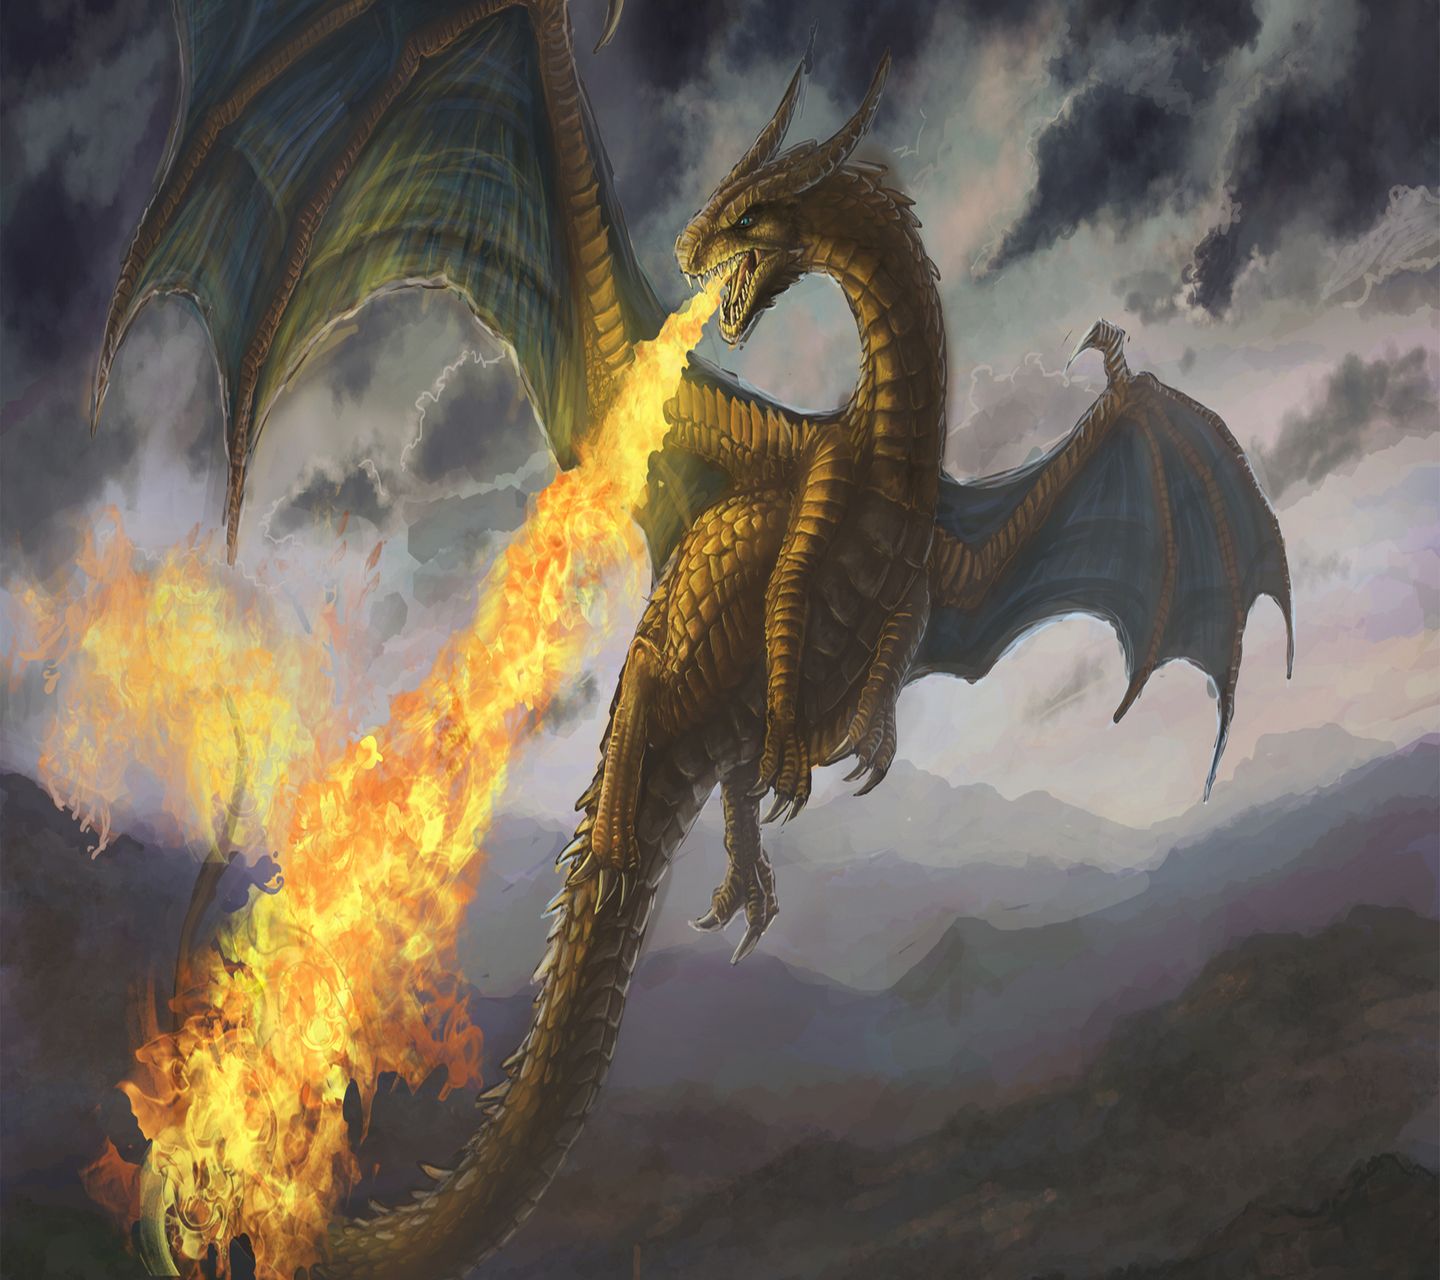 Ảnh rồng lửa là sự kết hợp tuyệt vời giữa đam mê phiêu lưu và nghệ thuật. Với bức ảnh này, bạn sẽ được nhìn thấy một con rồng ngụy trang trong ngọn lửa đang chờ đợi được khám phá.